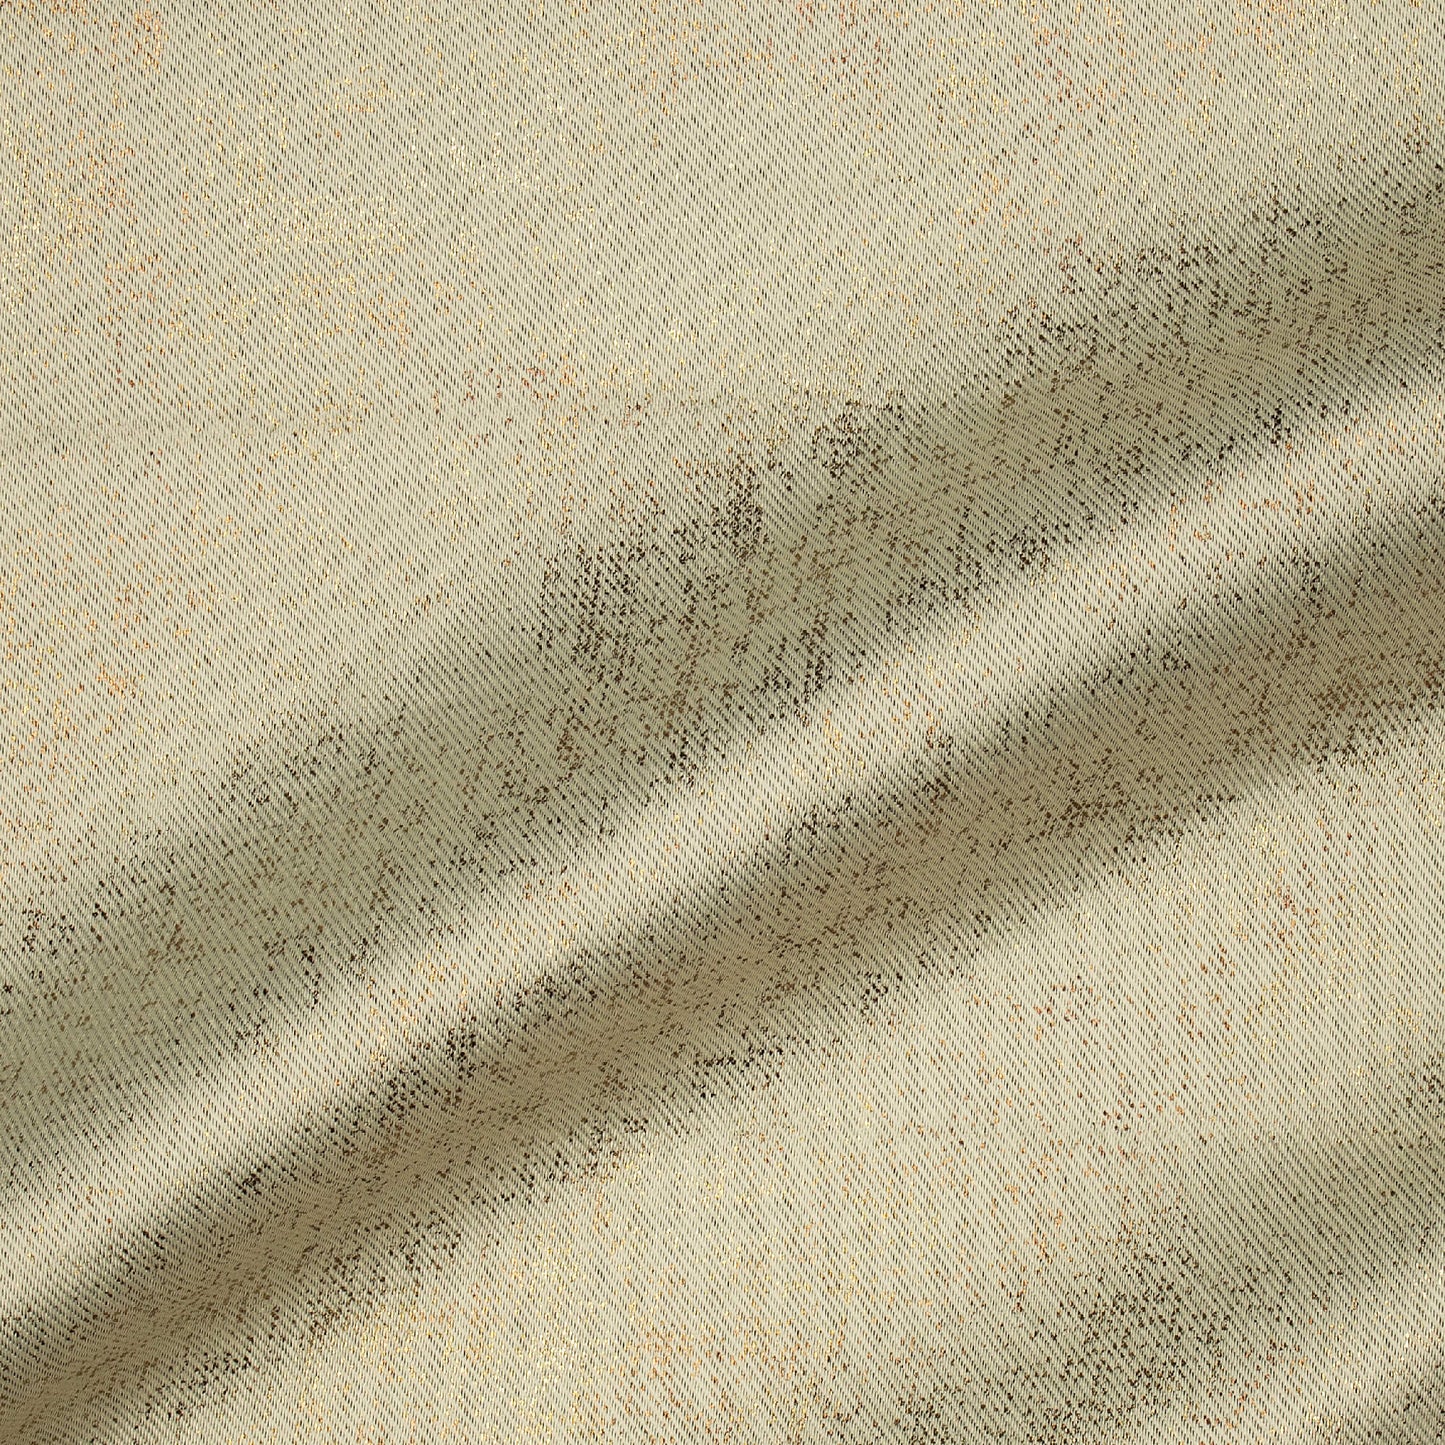 Beige Geometric Pattern Golden Foil Premium Curtain Fabric (Width 54 Inches)